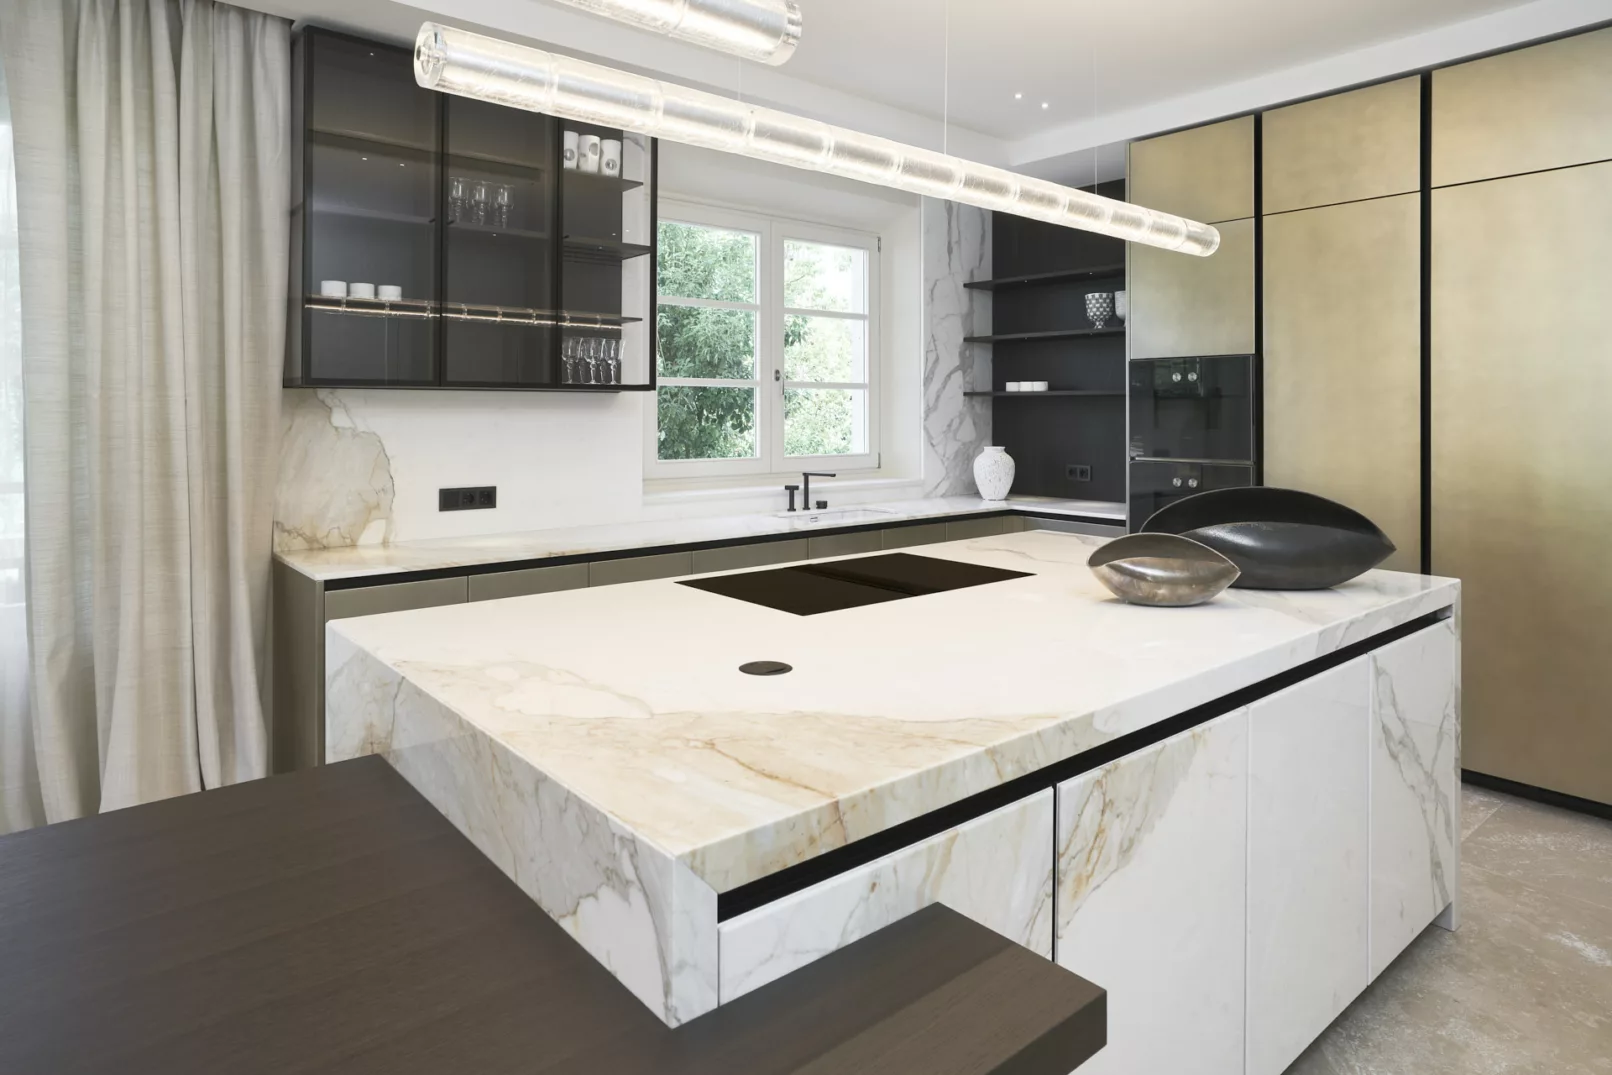 cucina moderna di design in marmo di Carrara realizzata dallo studio InterniNow e fotografata da duzimage, fotografo commerciale di La Spezia.